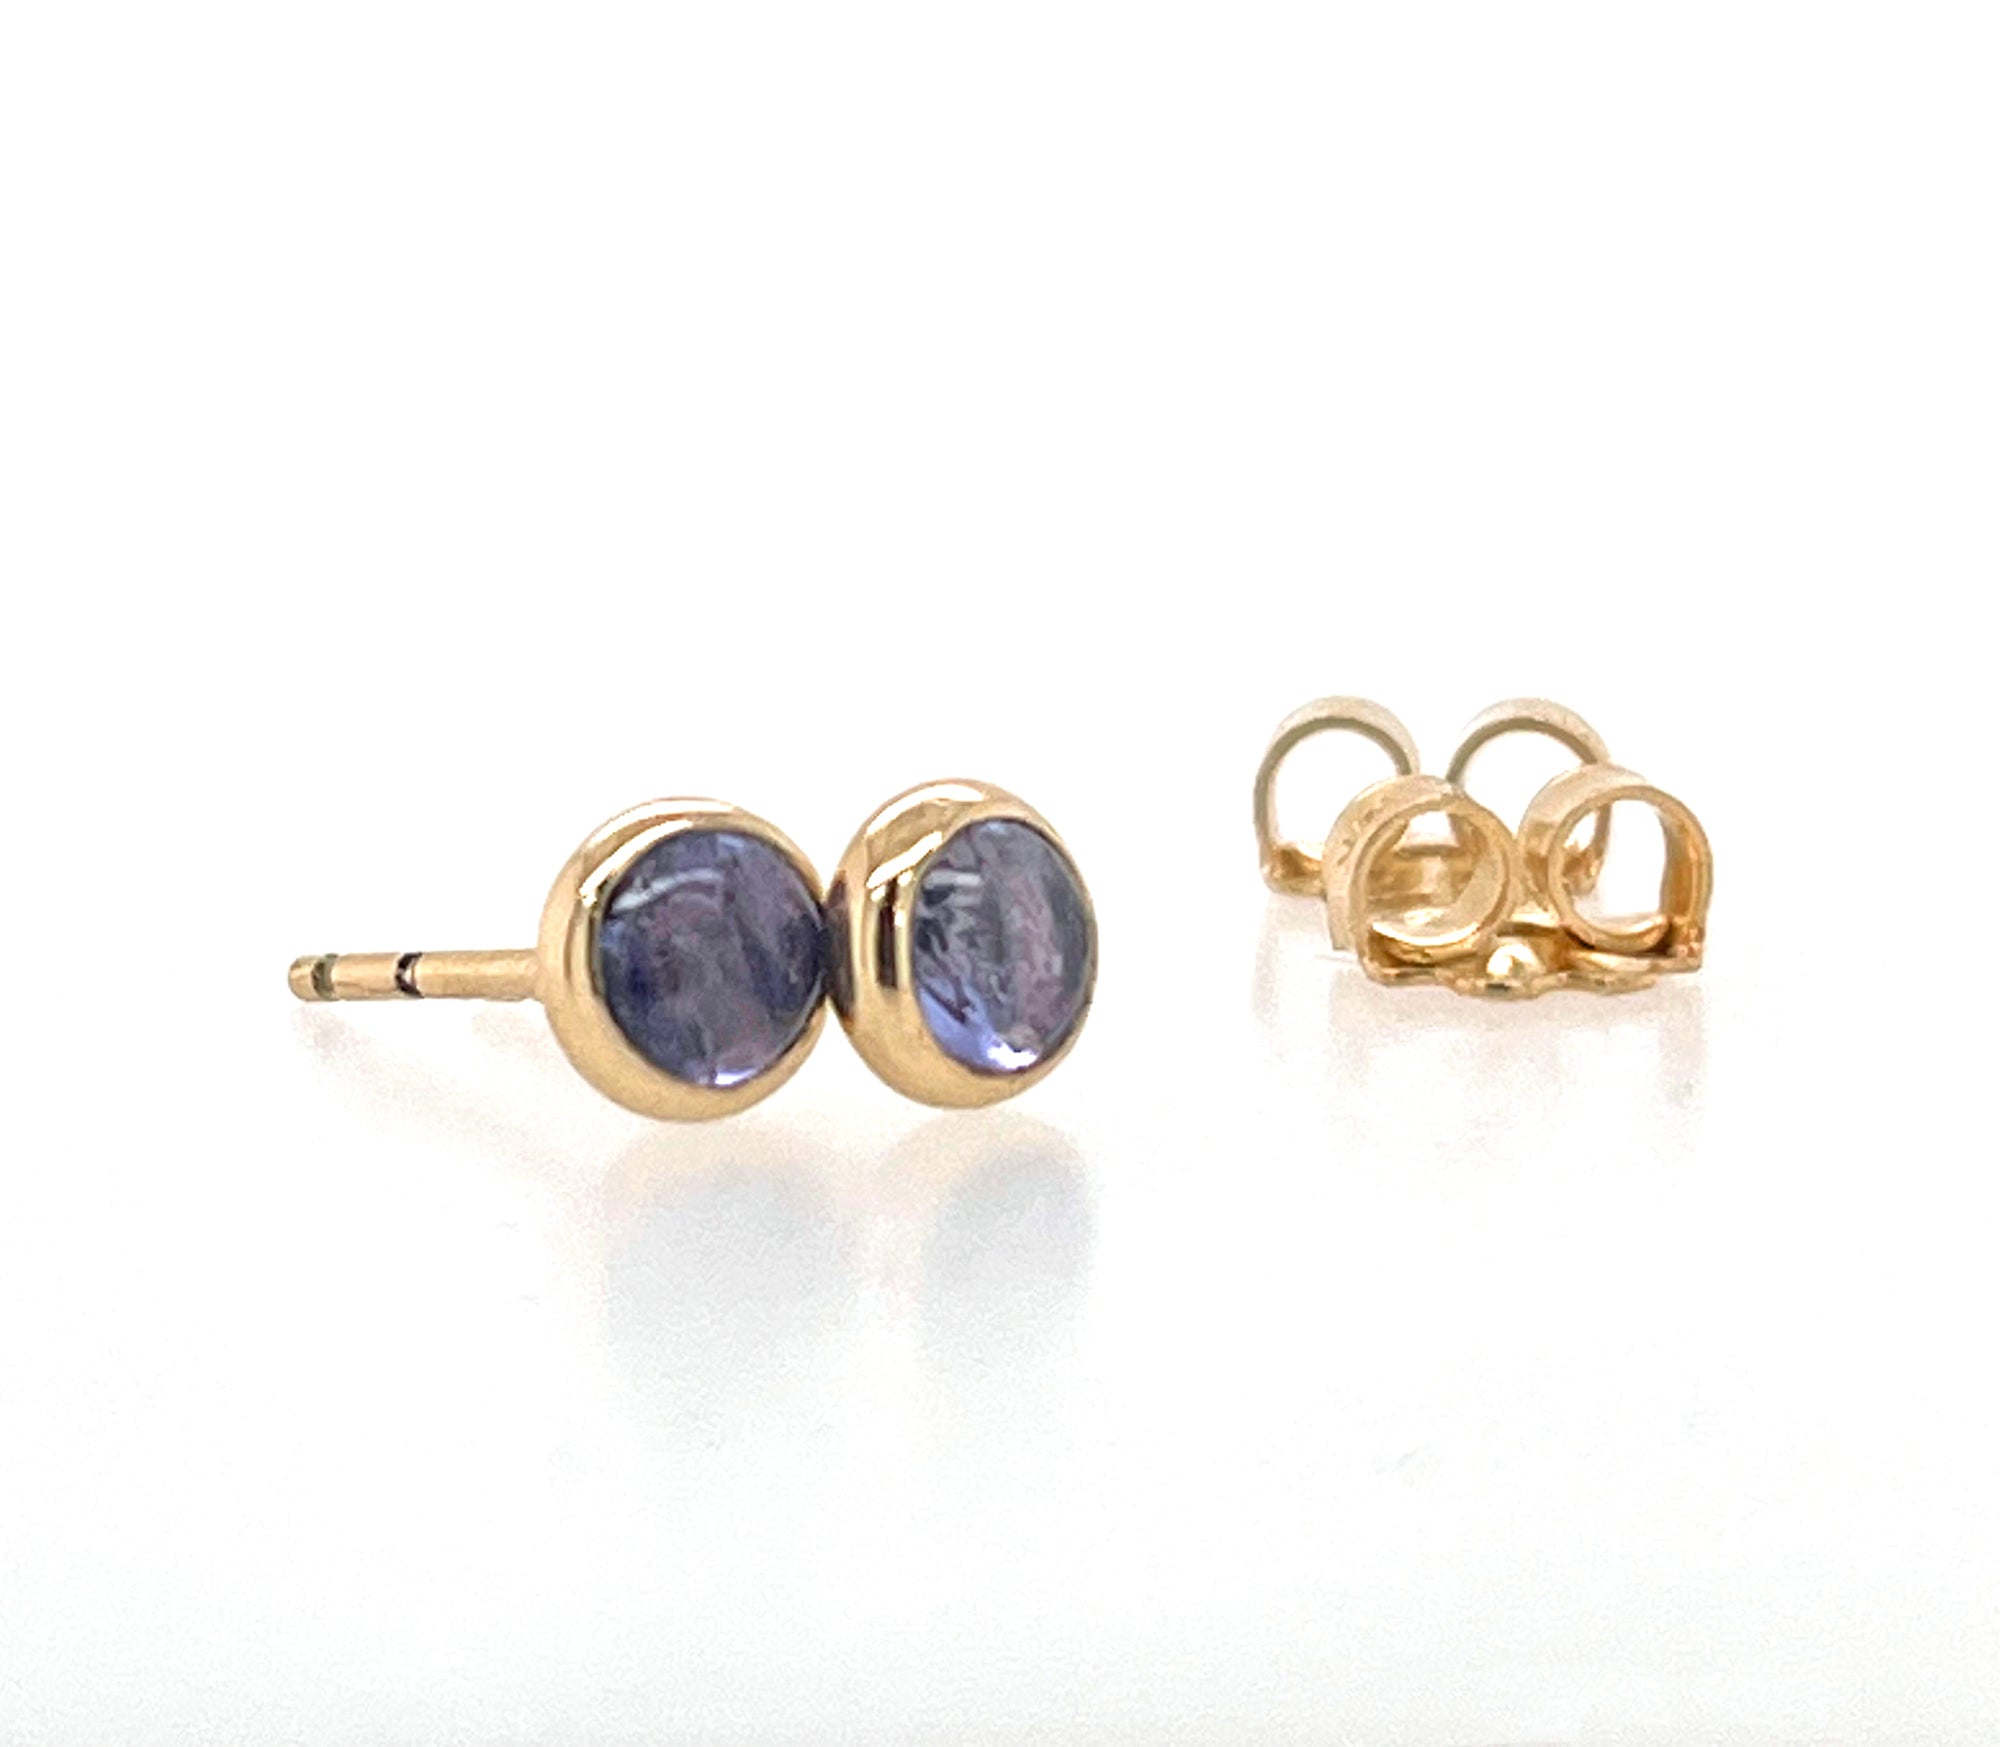 Tanzanite Earrings, Solid 14k Gold Earrings, Tanzanite Gold Bezel Stud Earrings, Minimalist Earrings, Small Stud Earrings